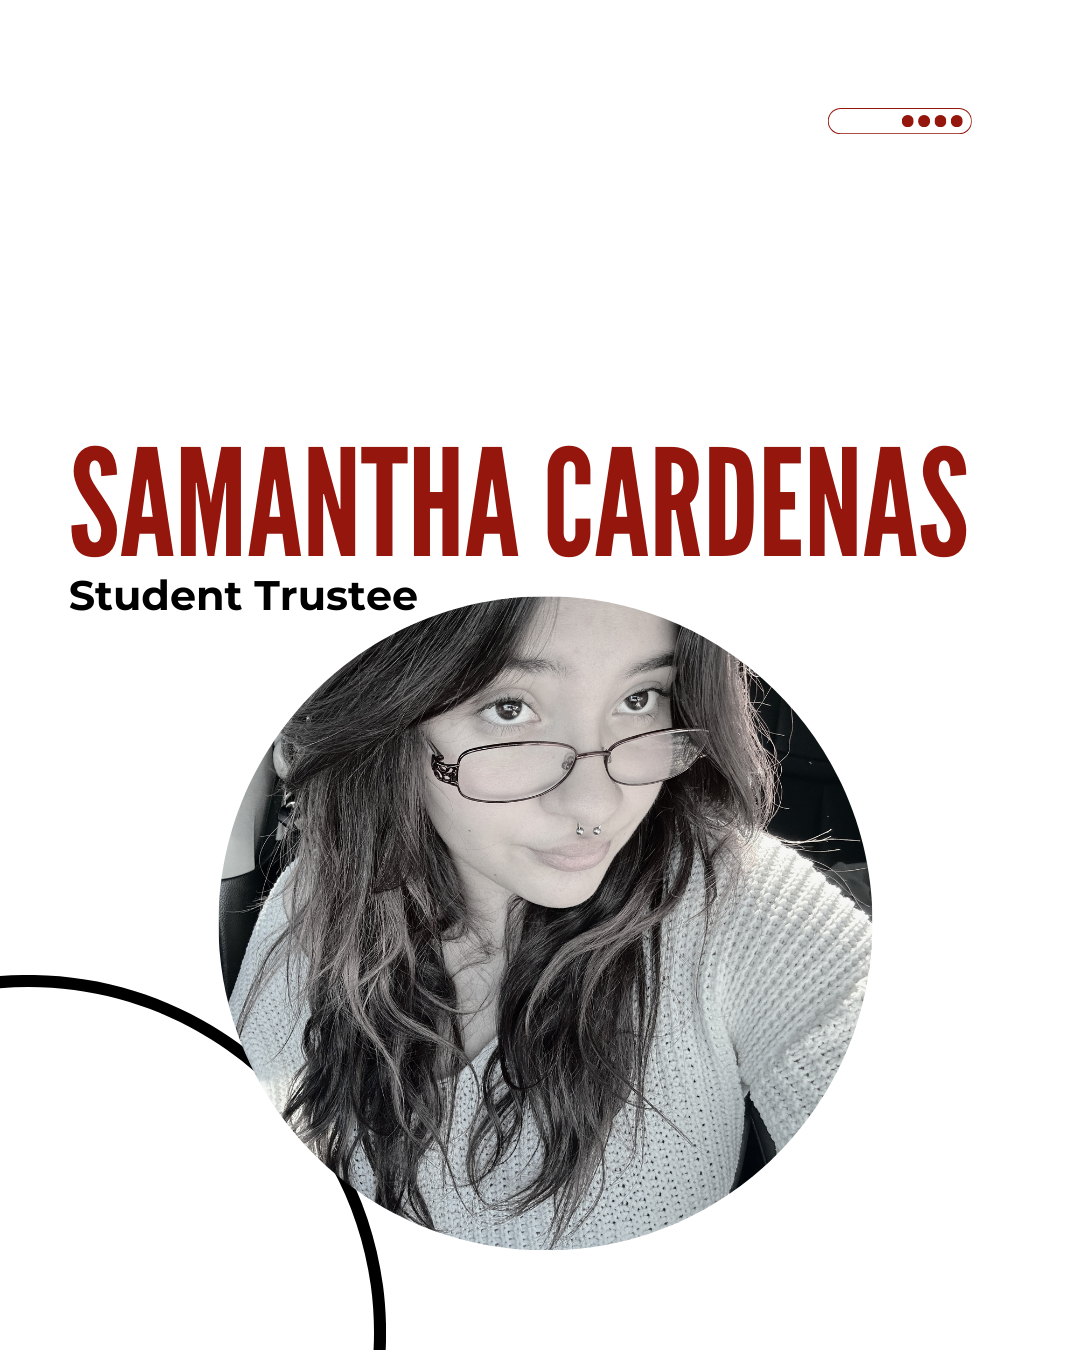 Samantha Cardenas